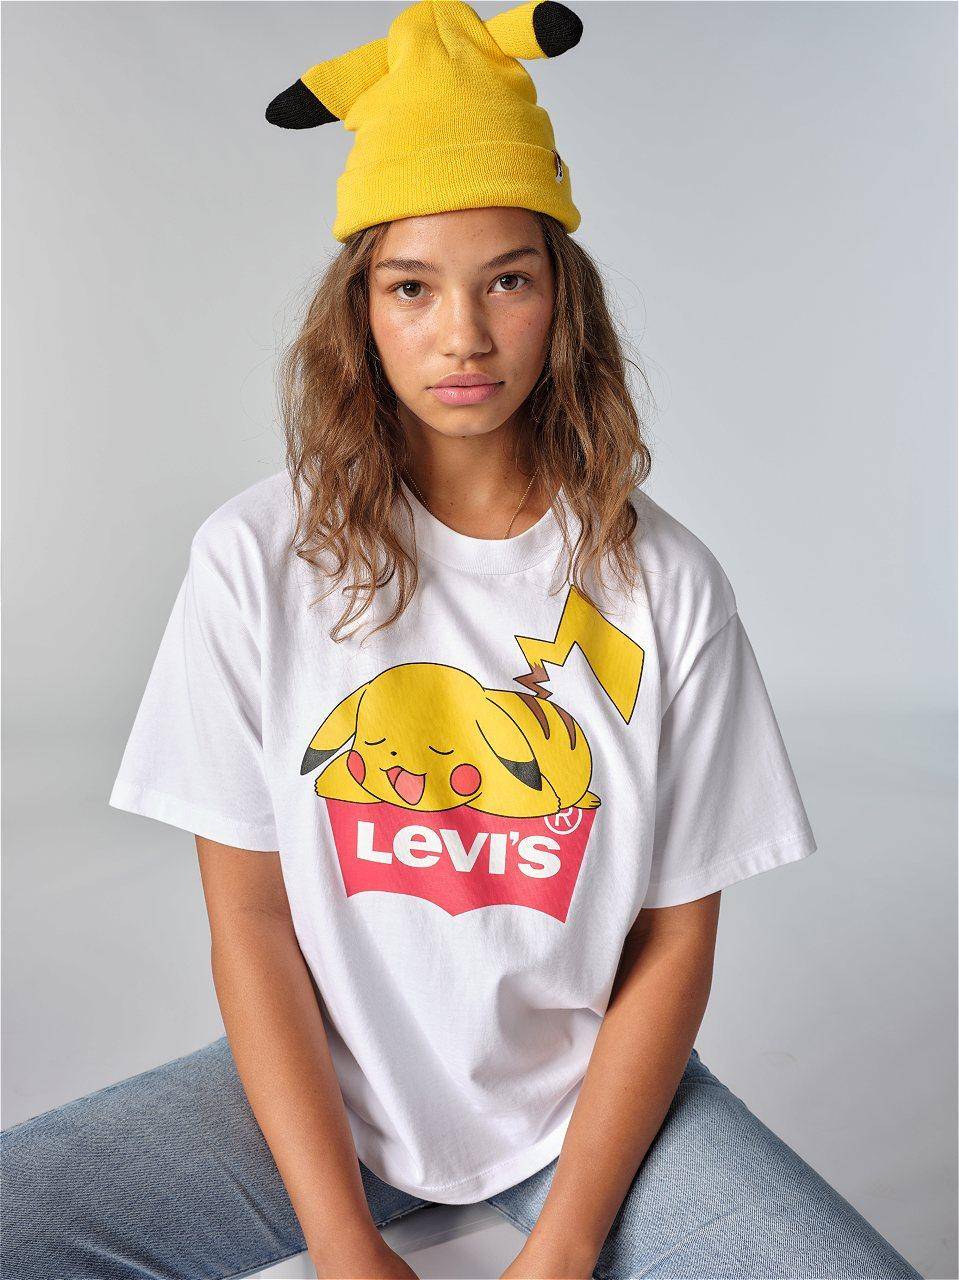 Levi's x Pokémon: Conoce la línea de ropa que estará disponible el 15 de febrero 3